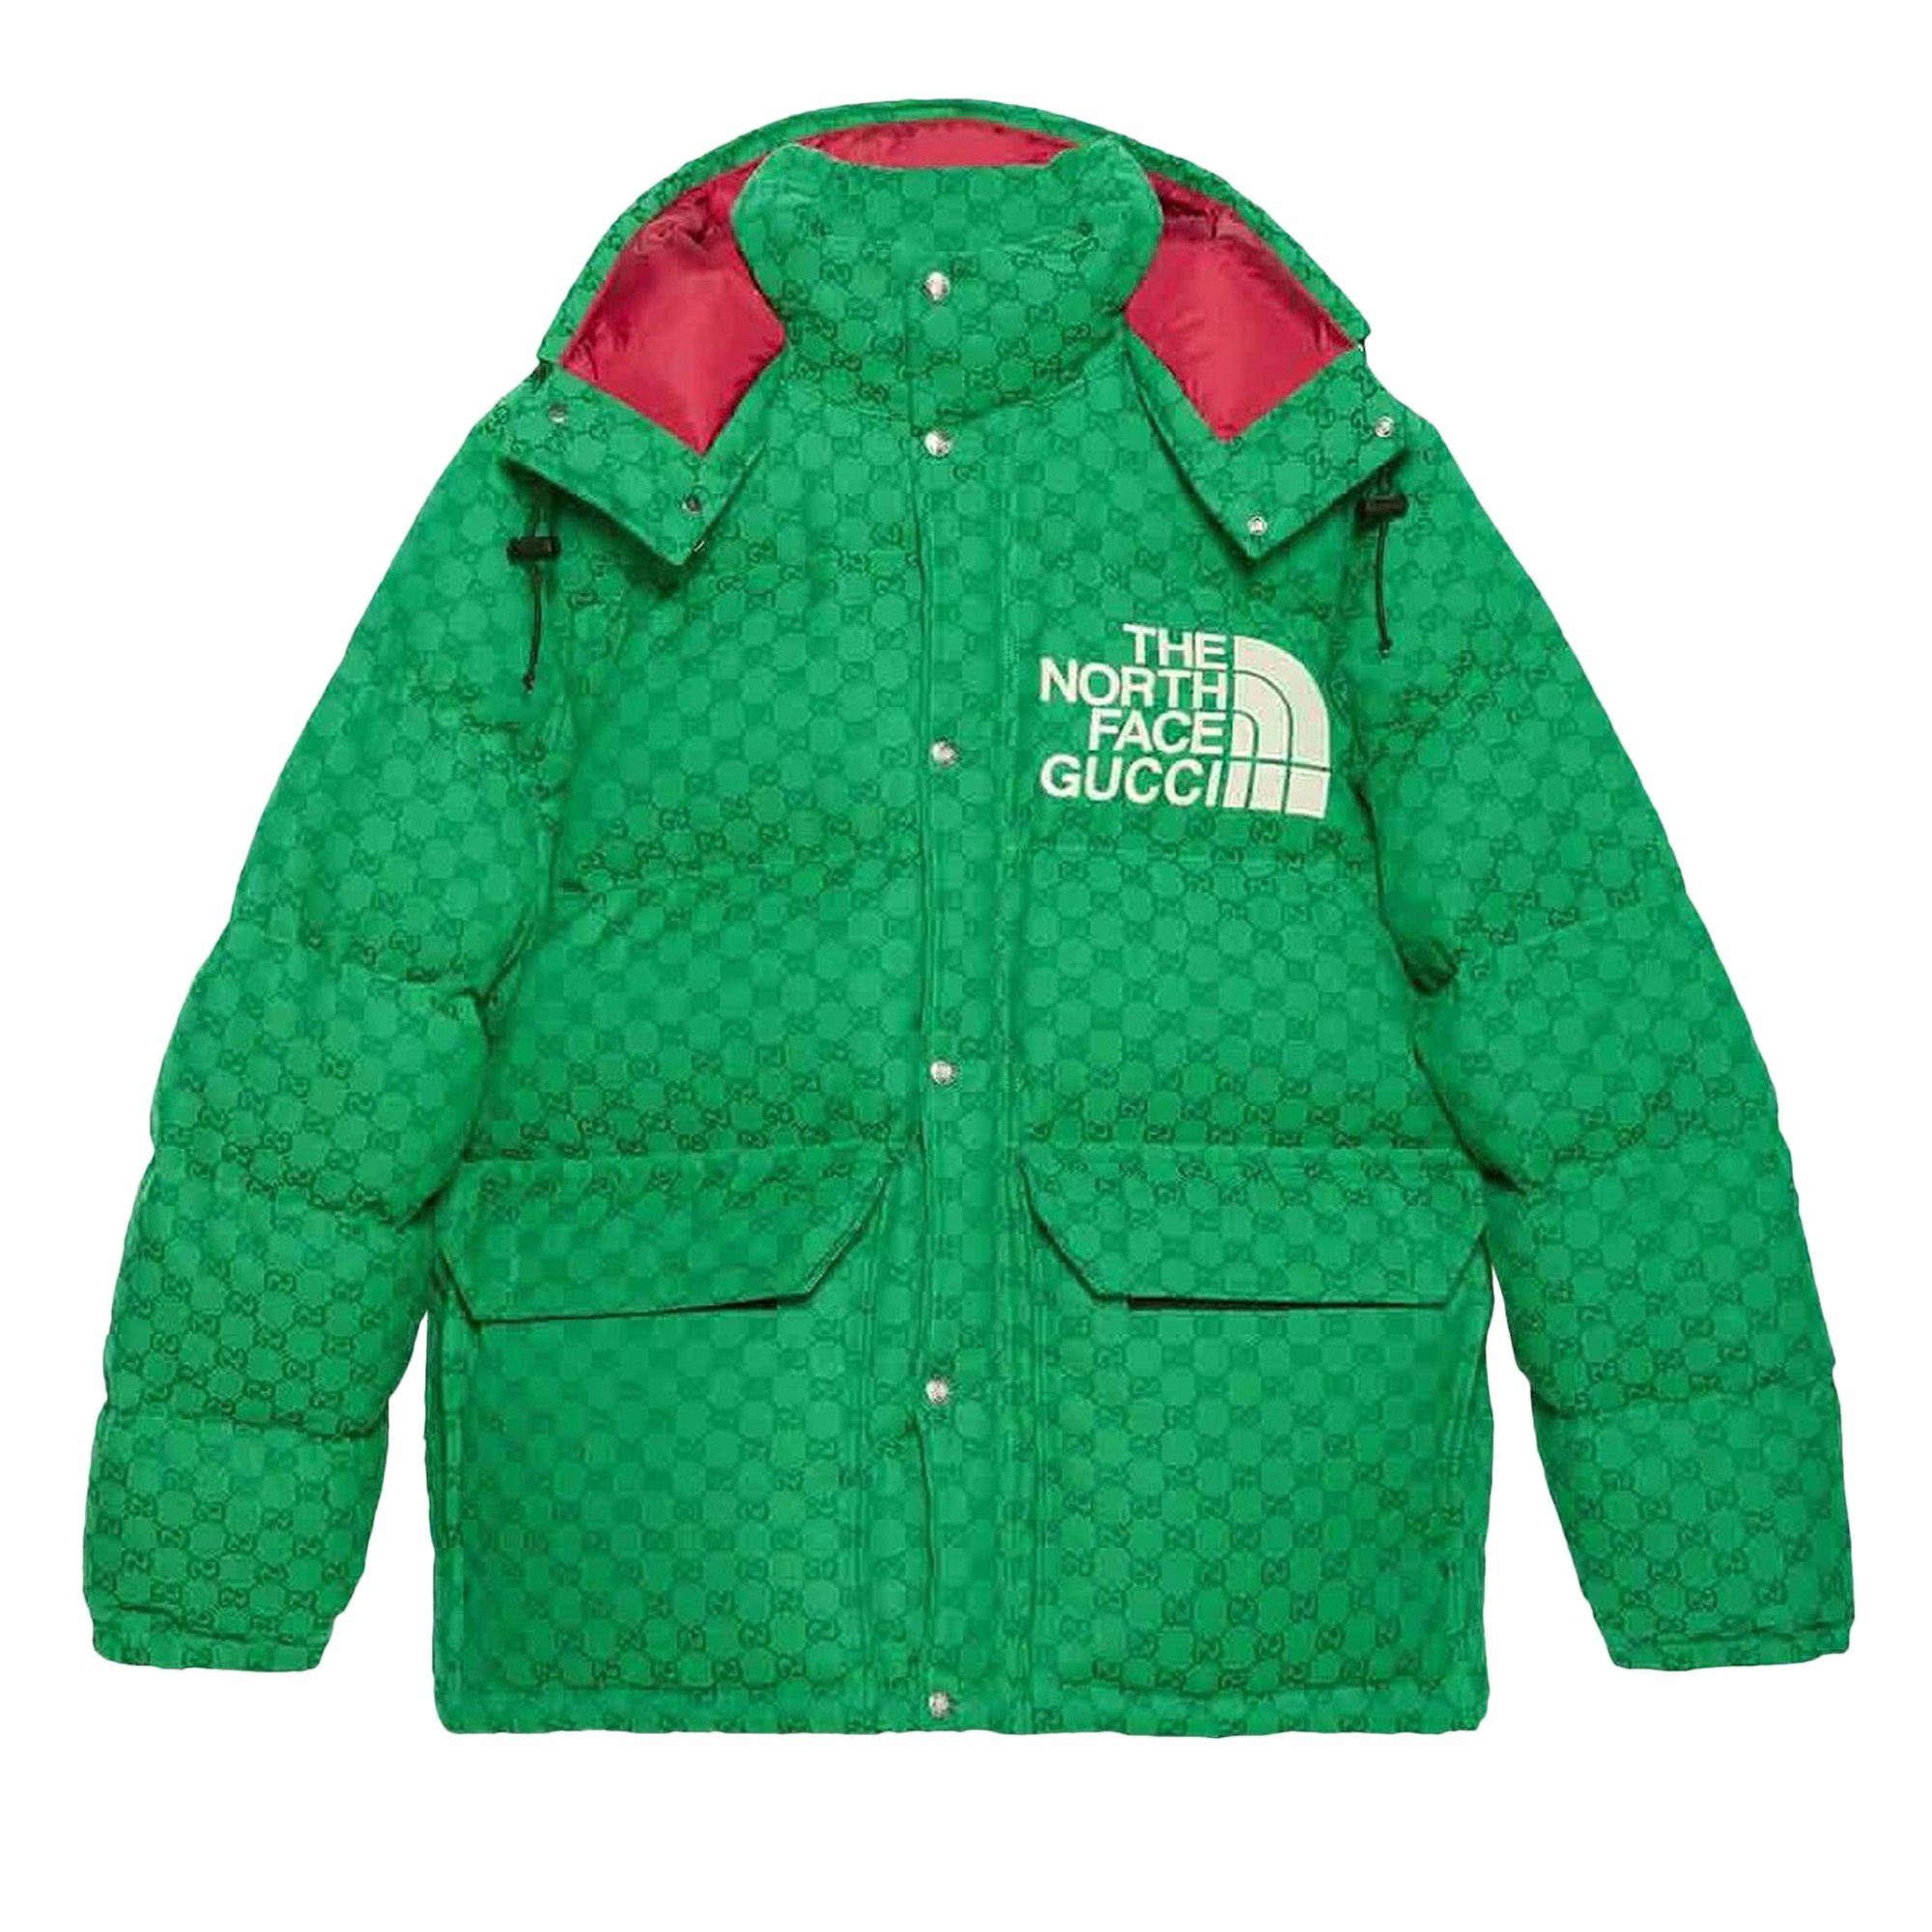 Заказать Пуховик Gucci x The North Face, цвет Зеленый/Темно-зеленый – цены,  описание и характеристики в «CDEK.Shopping»